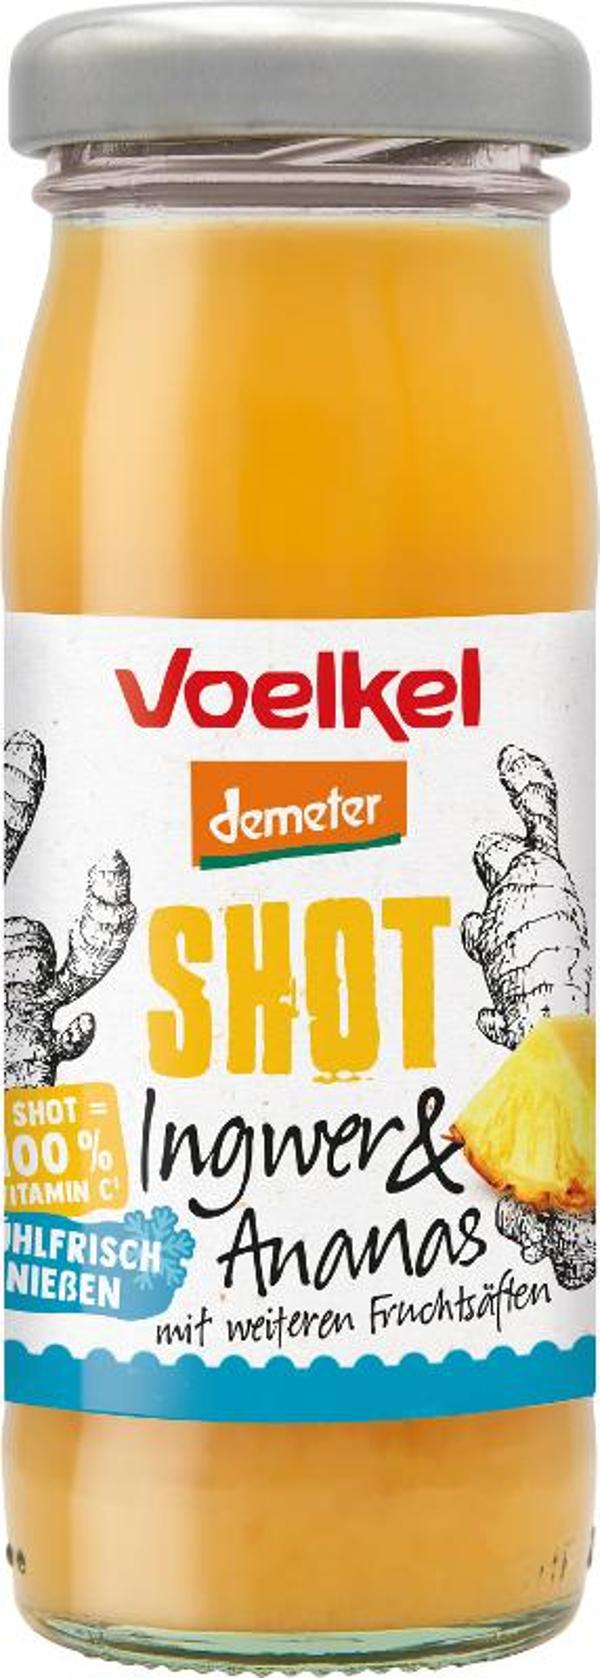 Produktfoto zu Shot Ingwer & Ananas von Voelkel